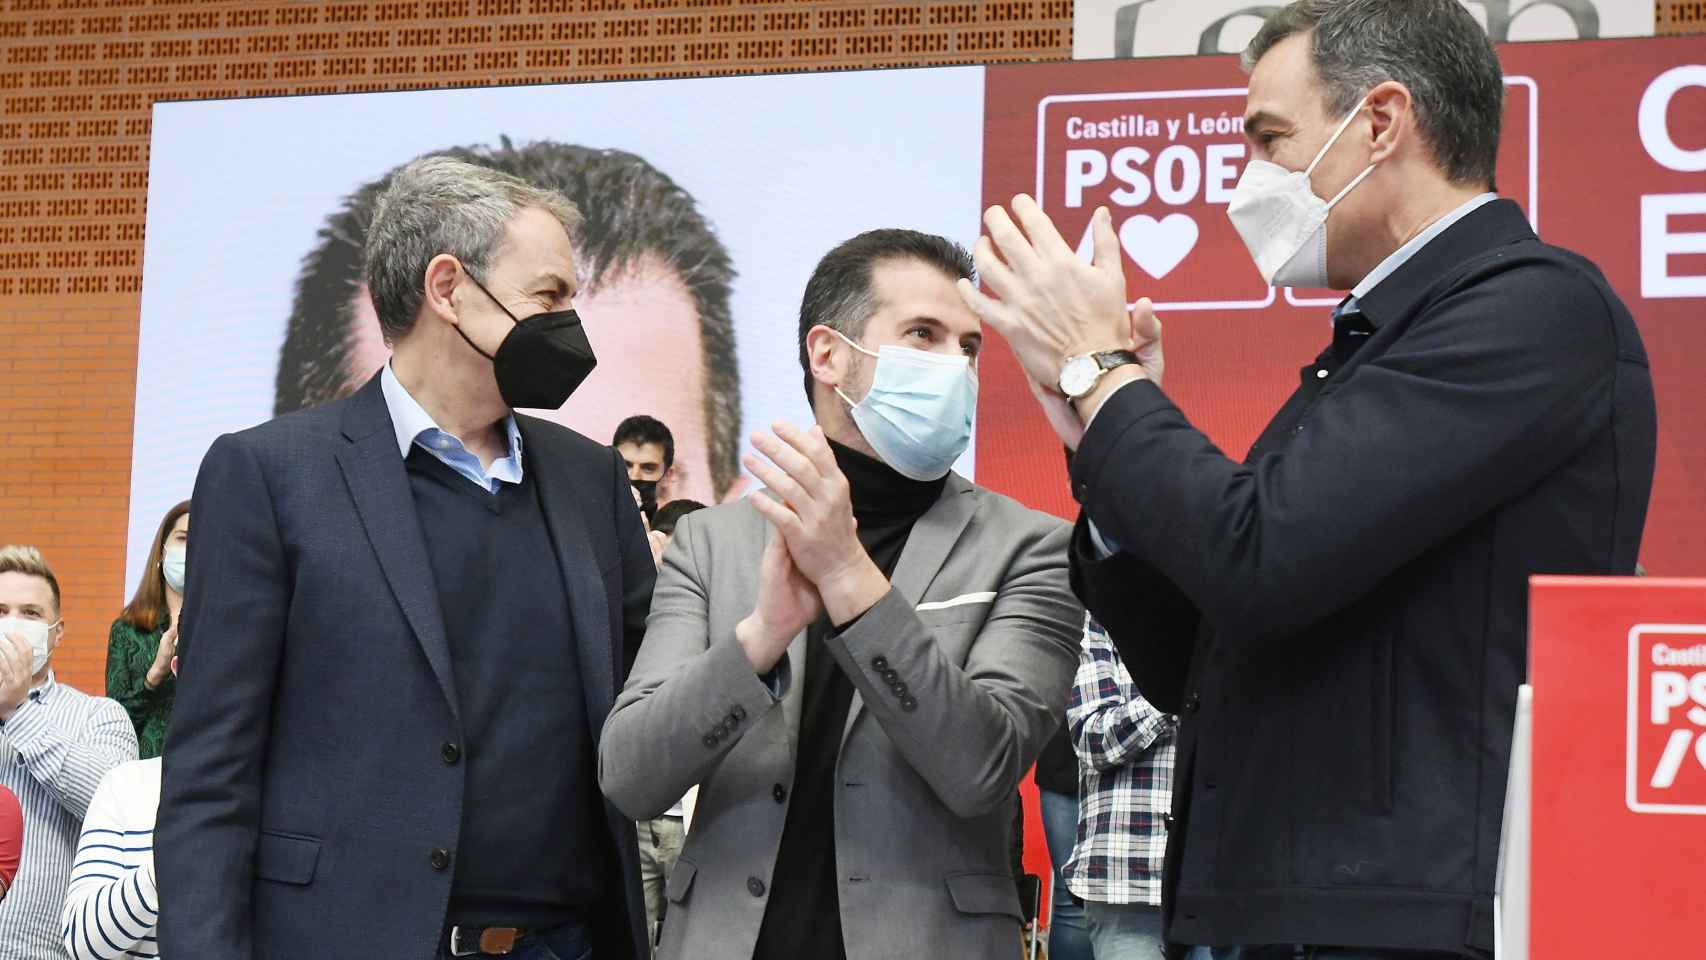 De izquierda a derecha: José Luis Rodríguez Zapatero, Luis Tudanca y Pedro Sánchez.